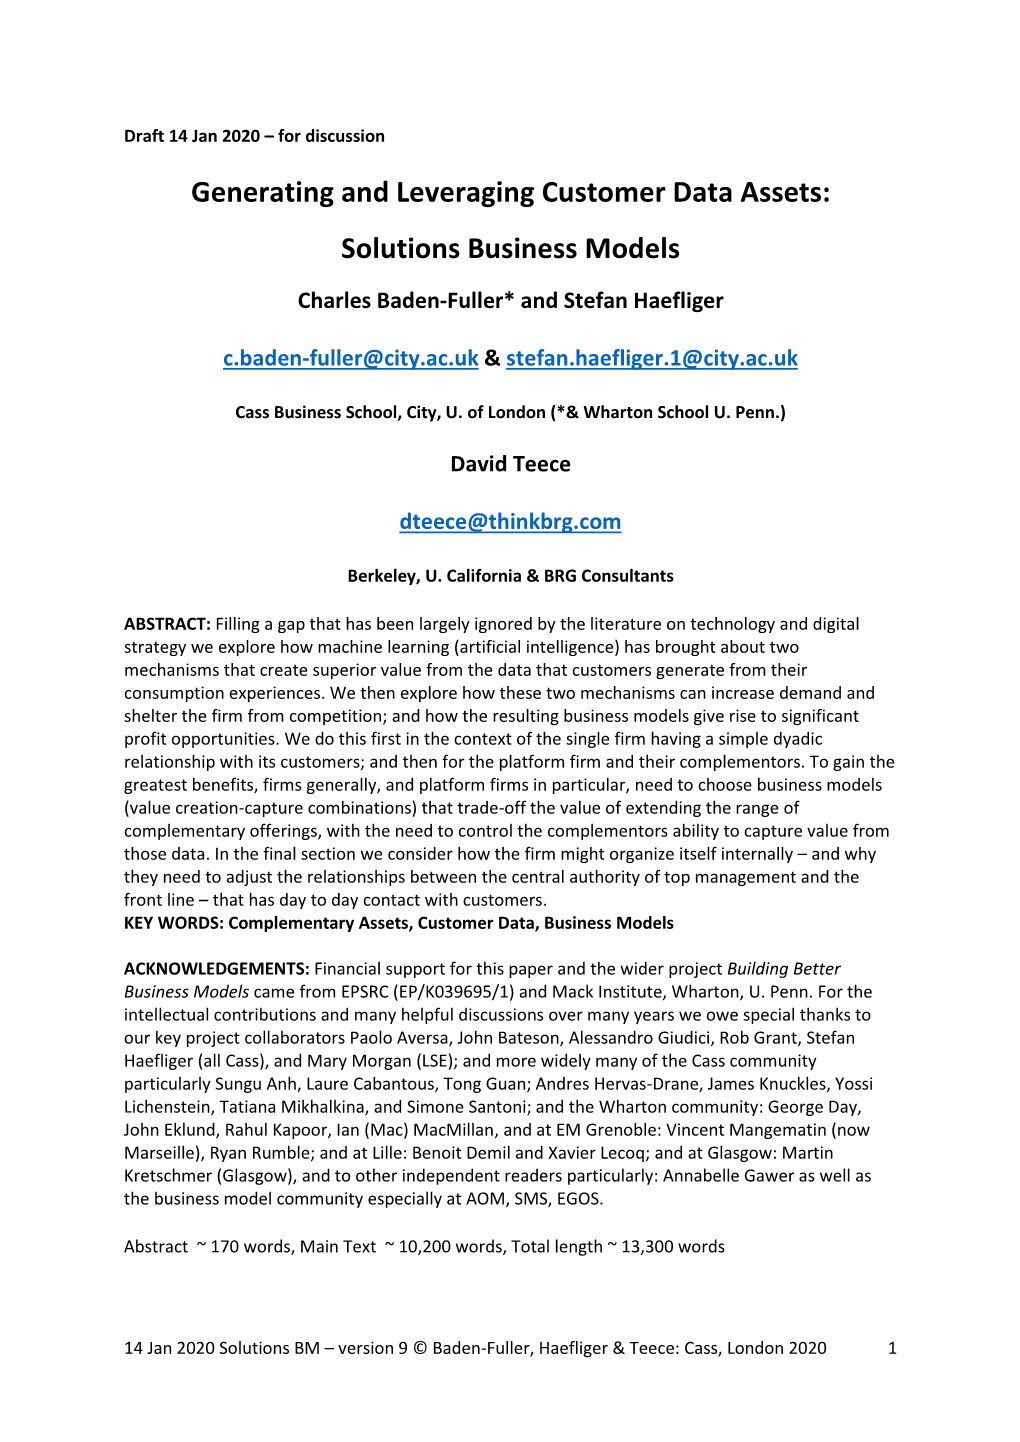 Generating and Leveraging Customer Data Assets: Solutions Business Models Charles Baden-Fuller* and Stefan Haefliger